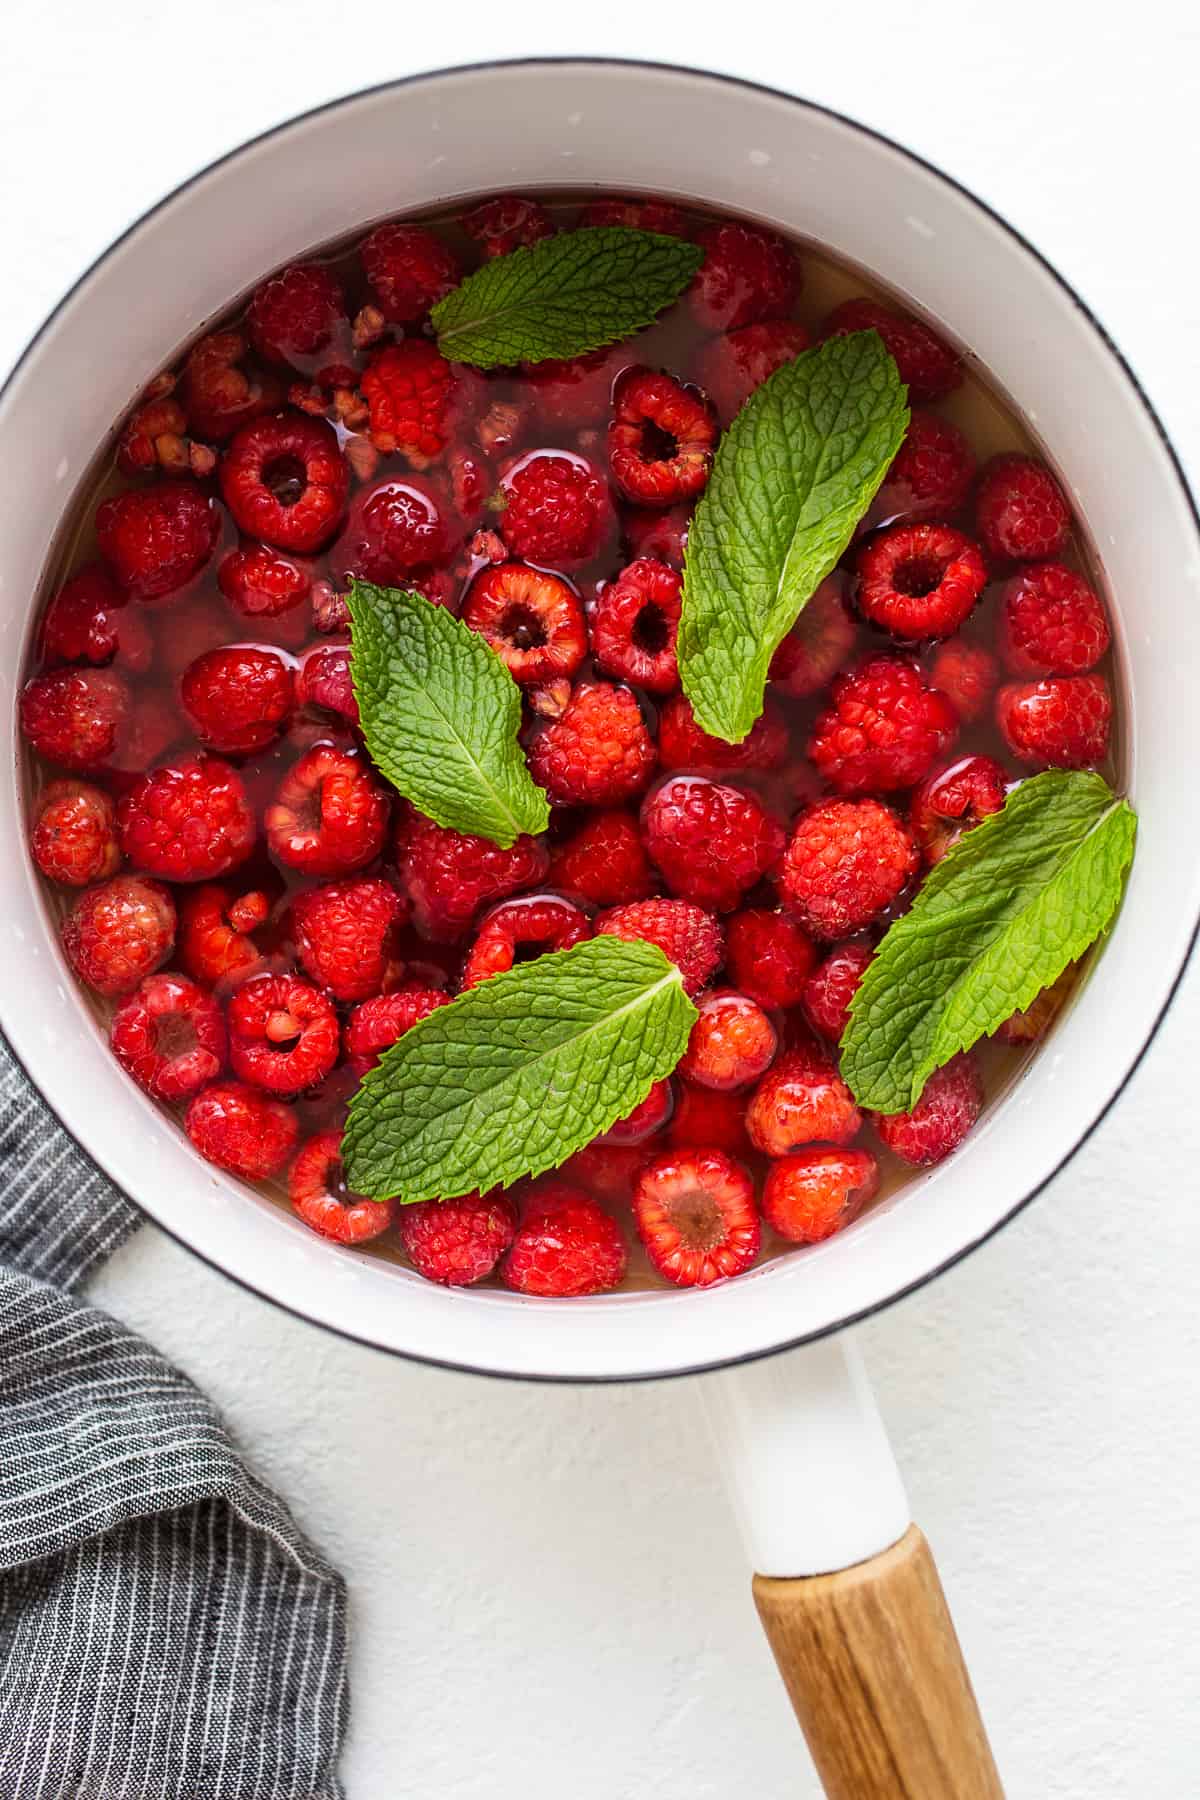 raspberries simmering in water and honey.